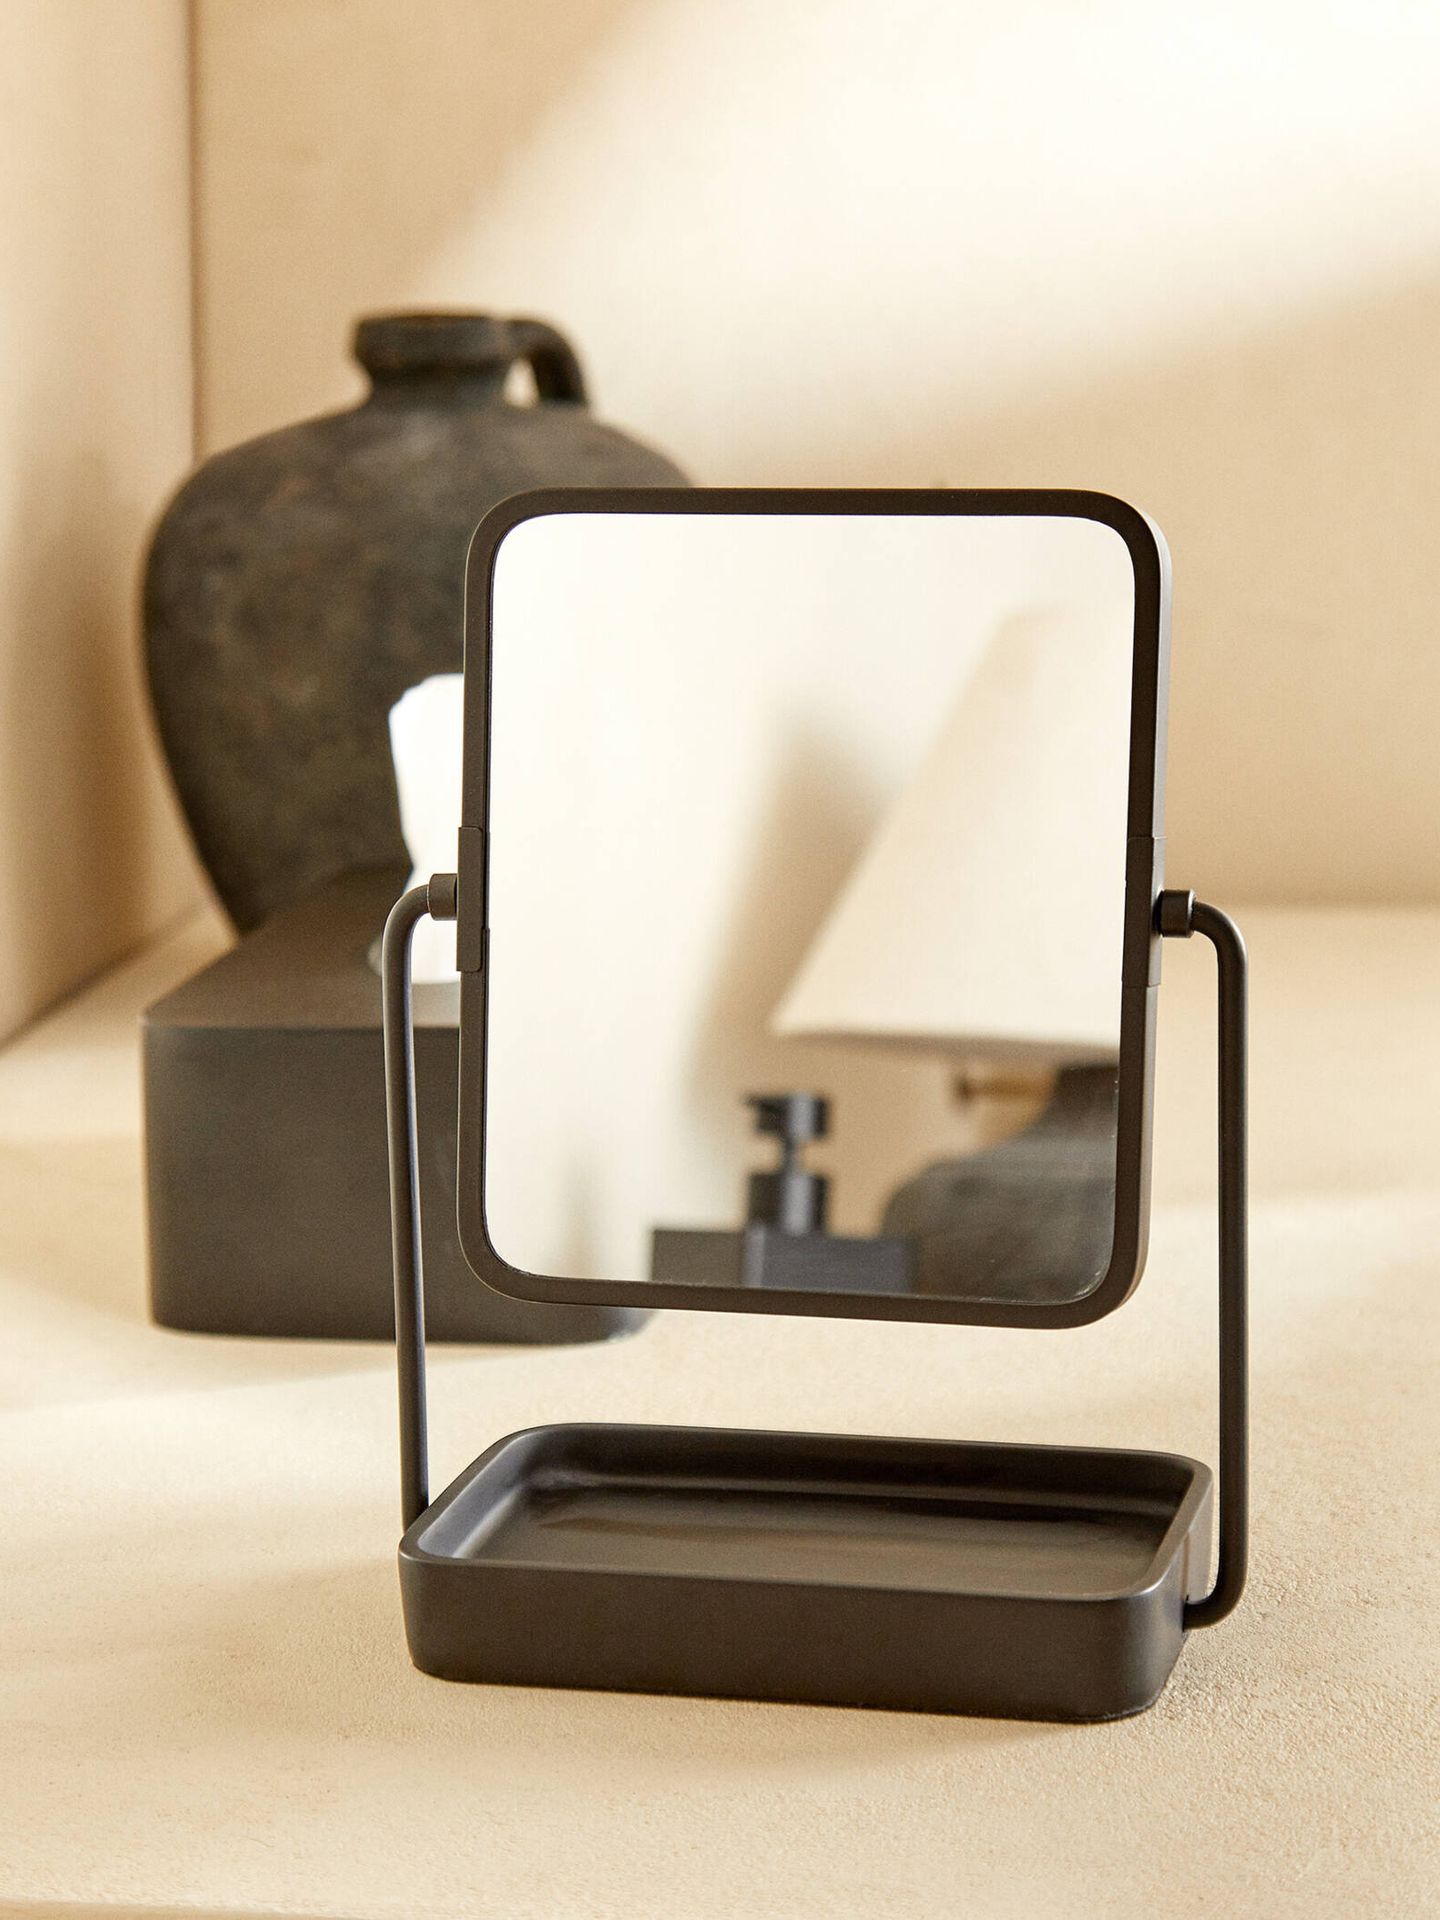 En Zara Home tienes este precioso espejo de resina. (Cortesía)